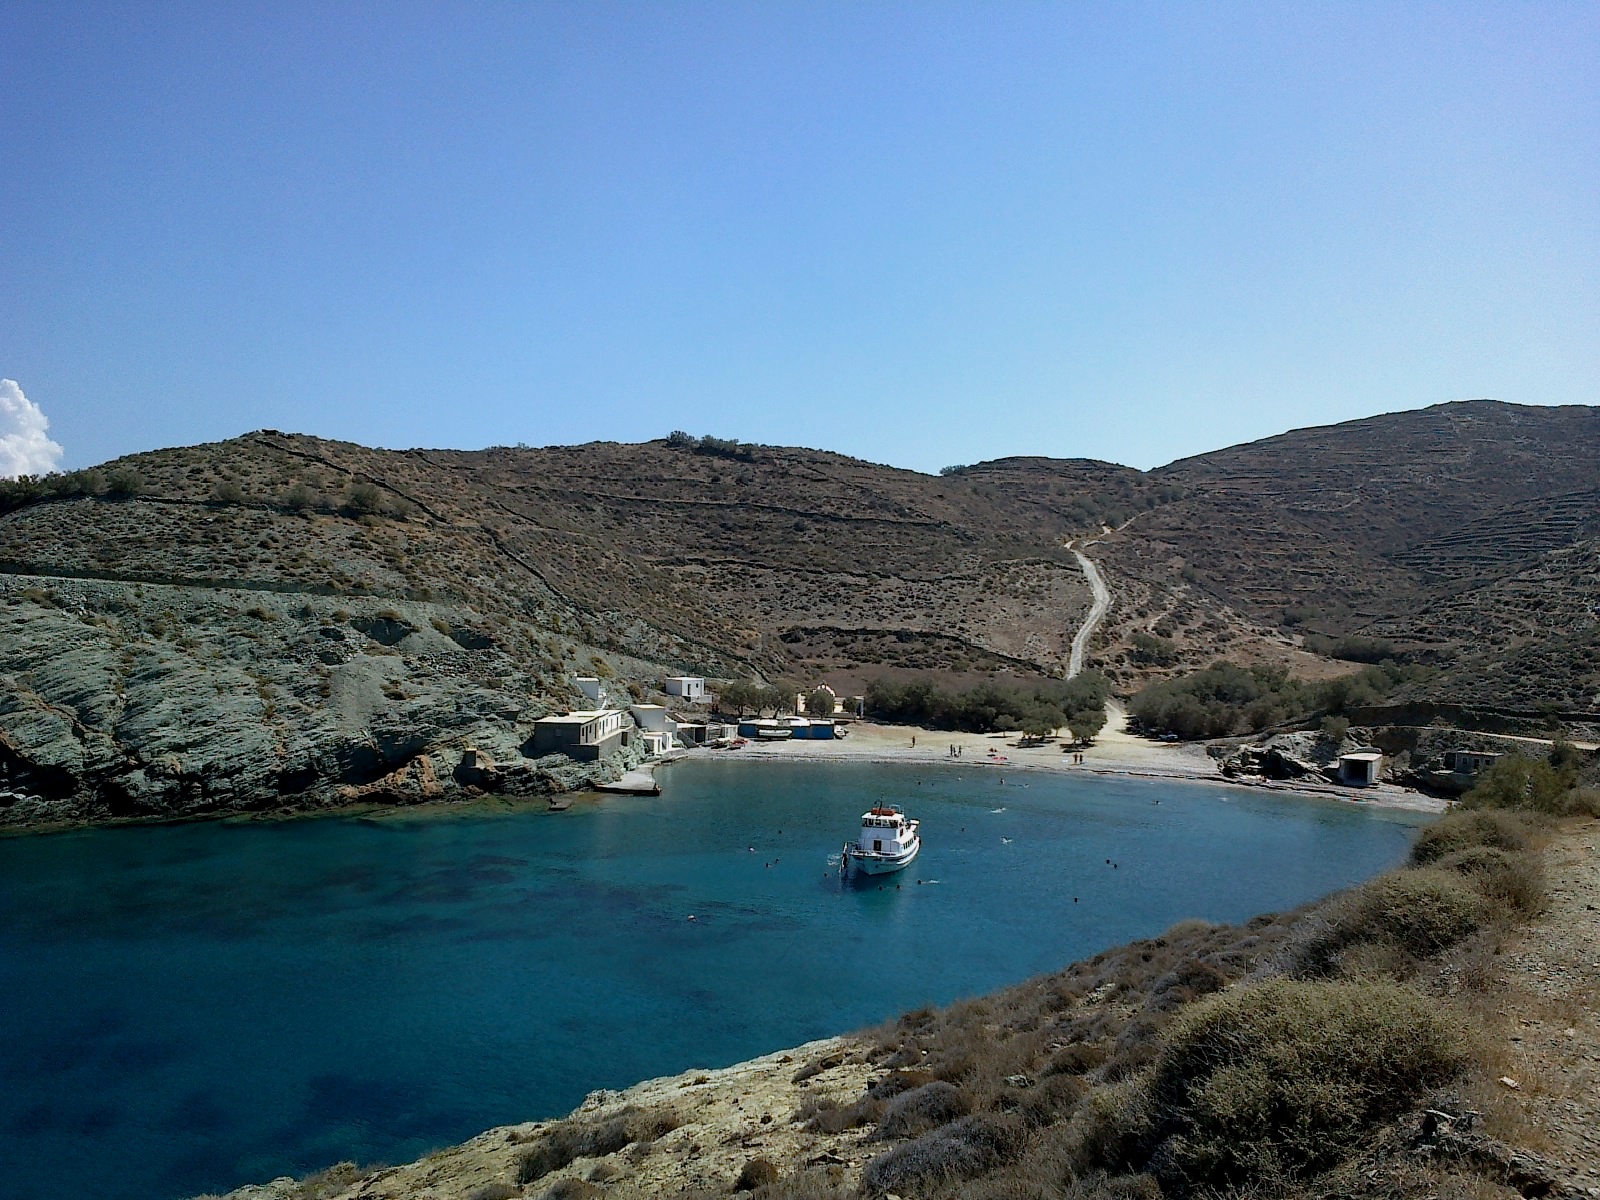 Agios Georgios'in fotoğrafı turkuaz saf su yüzey ile